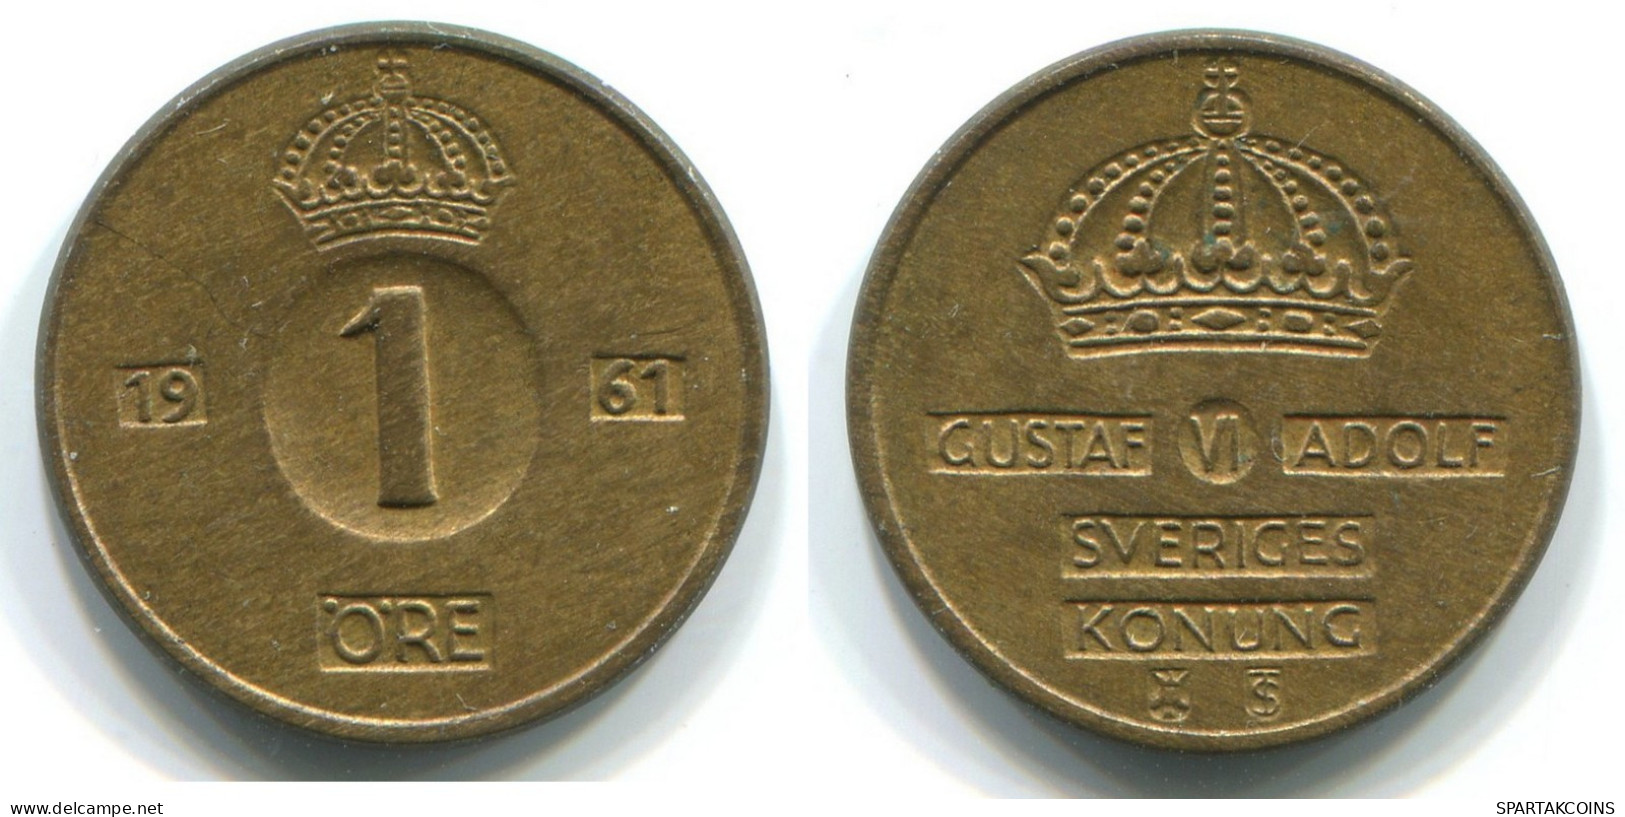 1 ORE 1961 SWEDEN Coin #WW1106.U.A - Svezia